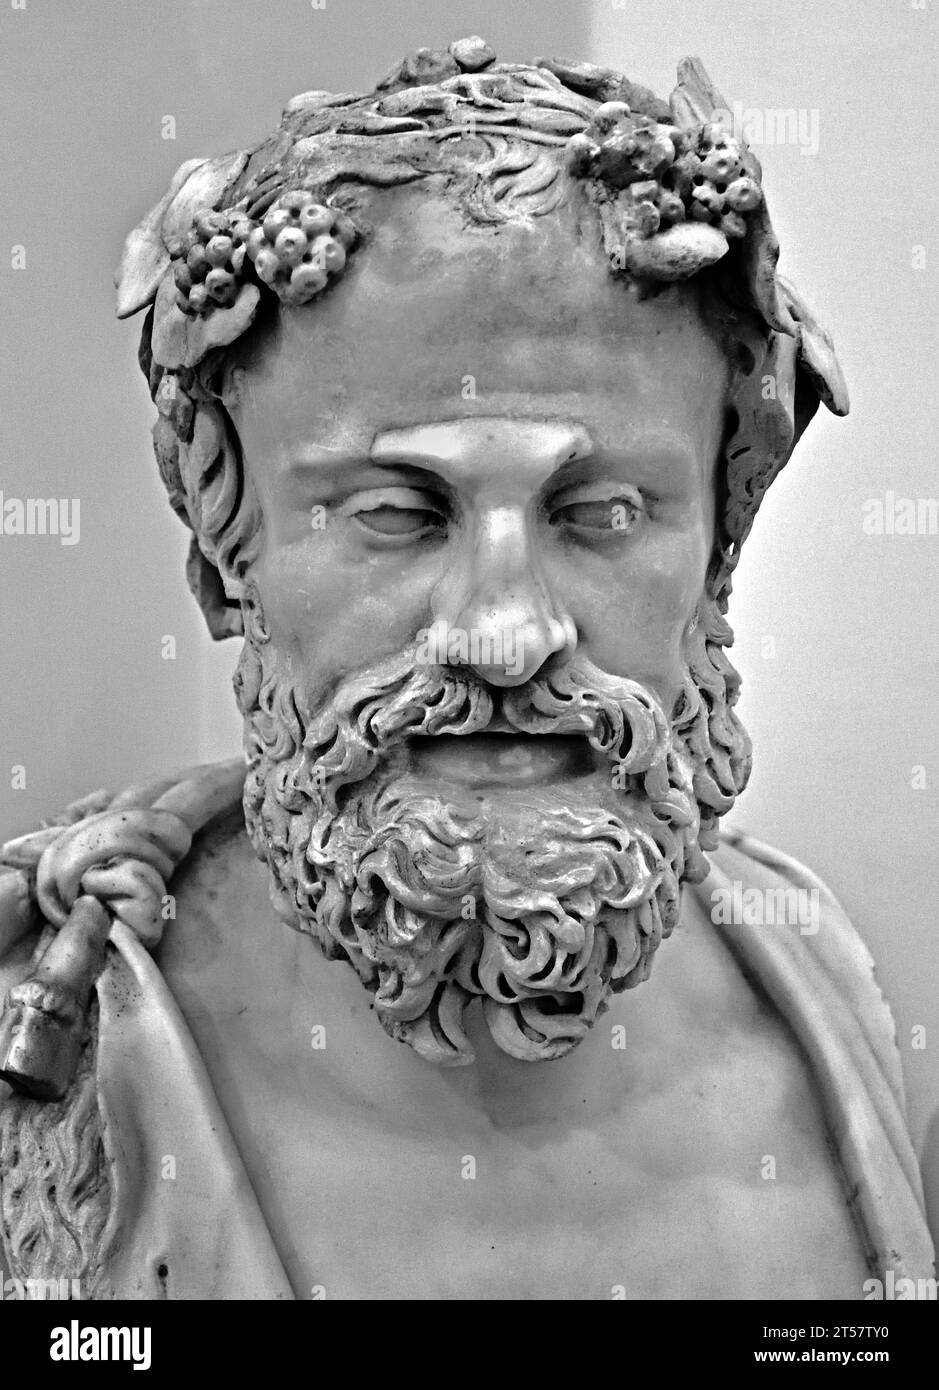 Busto di Sileno antico busto romano della Collezione Farnese, II secolo d.C. museo Archeologico Nazionale di Napoli Italia. Foto Stock